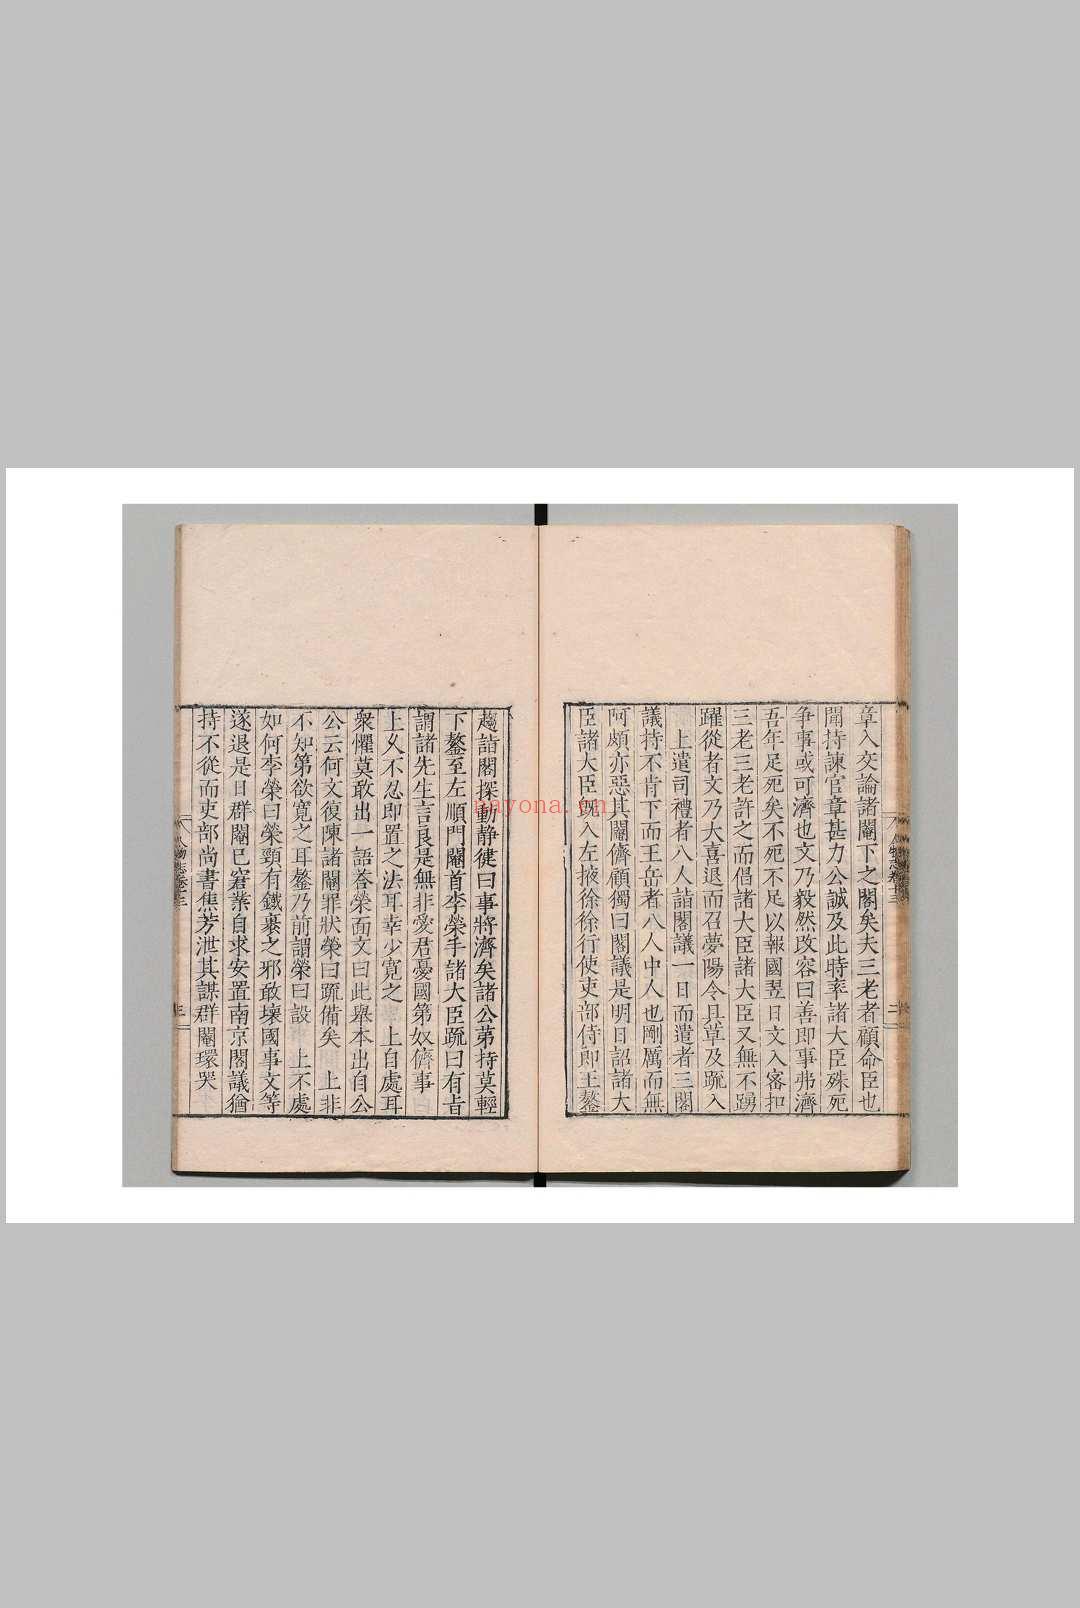 皇朝中州人物志 16卷 朱睦 明隆庆2年